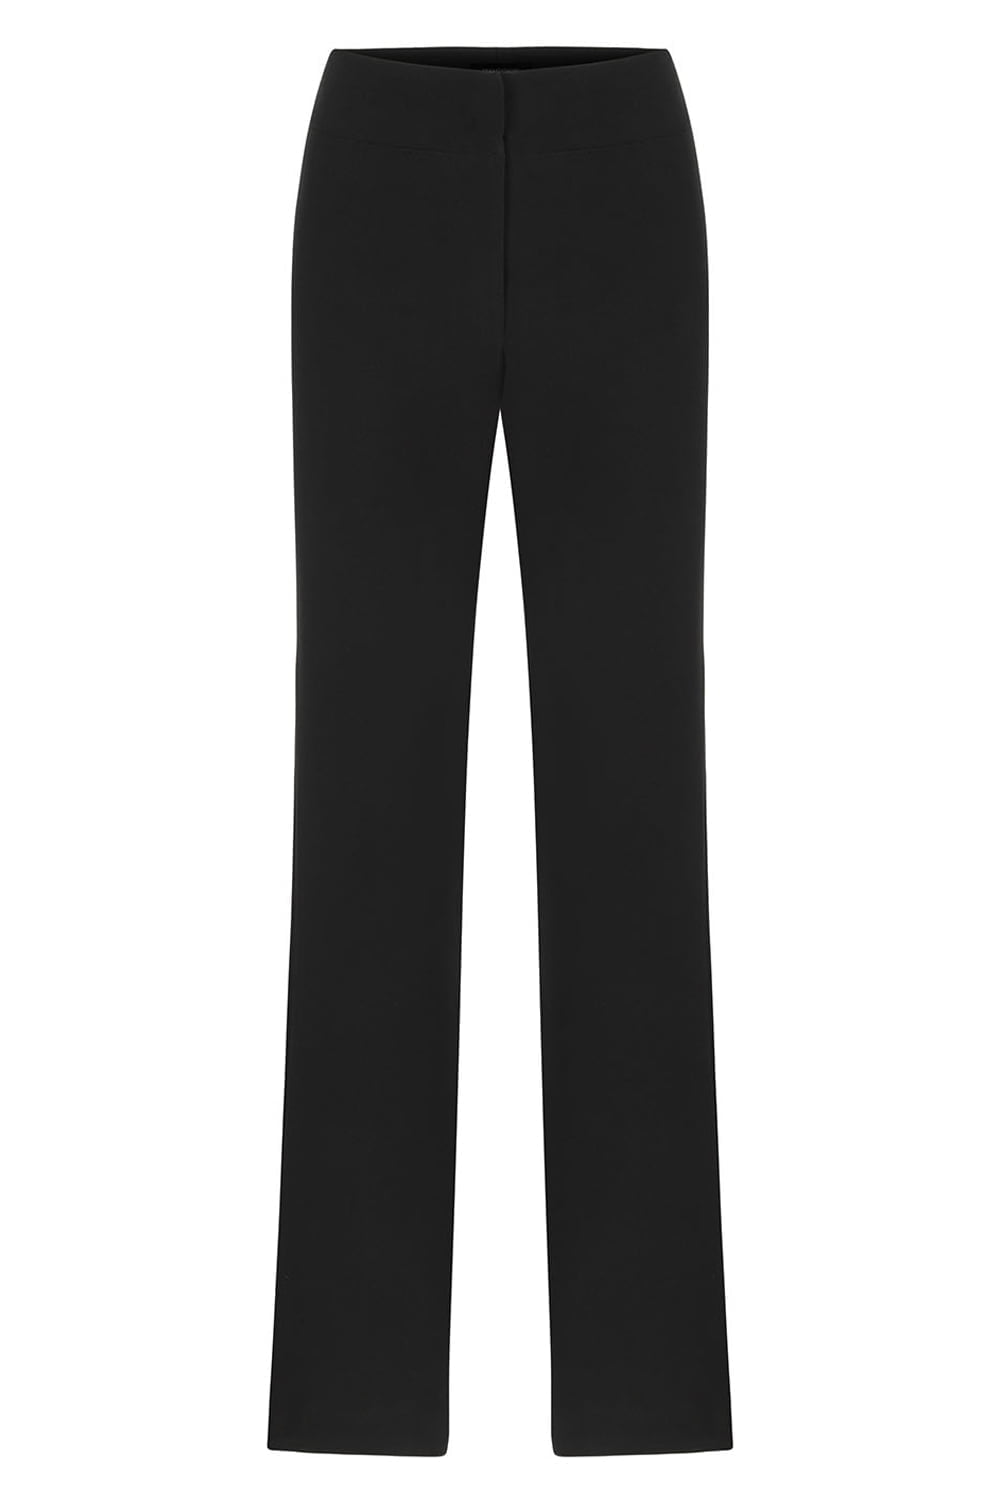 Sinem Babacan - Zayıf Gösteren Garnili Pantolon İkinci Görsel